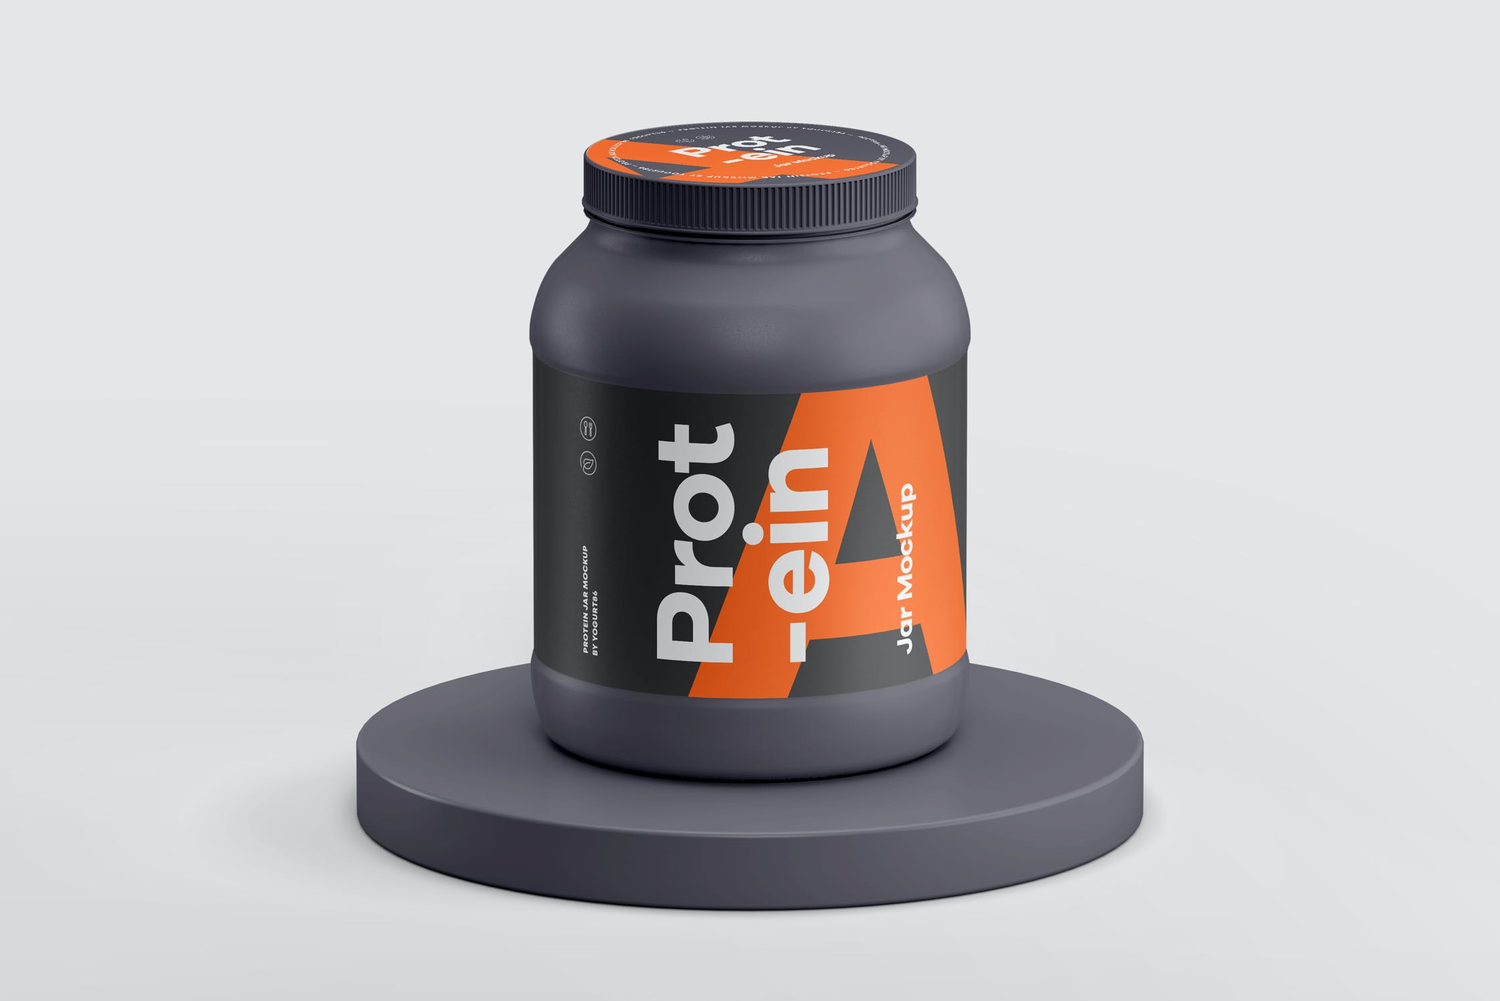 4756 健身锻炼蛋白质粉密封罐产品包装设计作品贴图ps样机素材展示模板 Protein Jar Mockup@GOOODME.COM